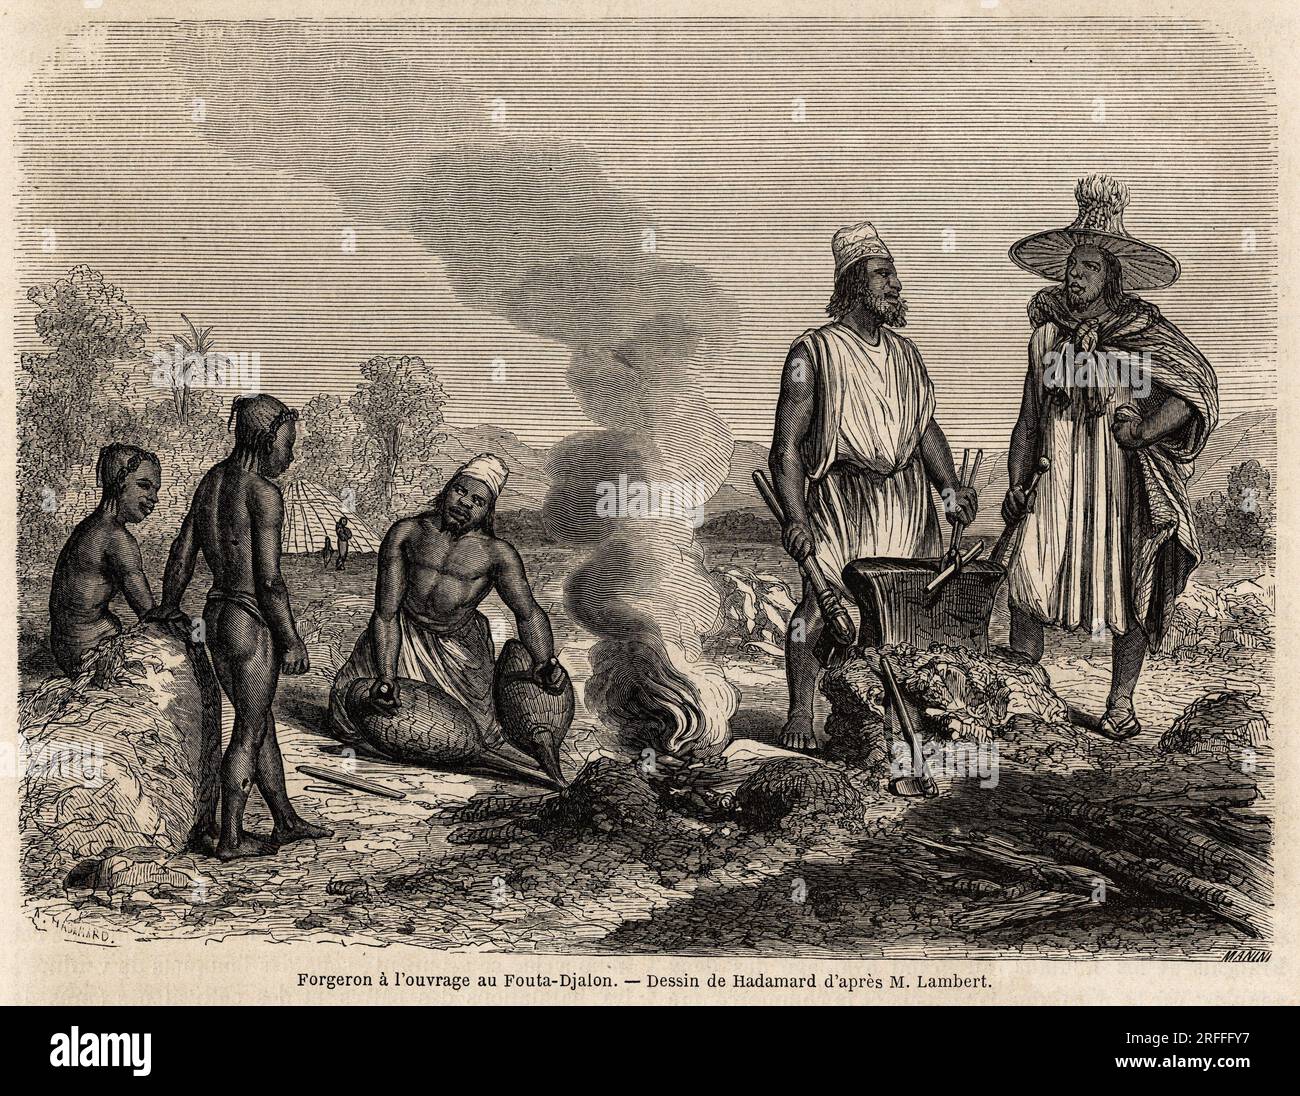 Forgeron a l'ouvrage au Fouta Djalon, (Senegal), dessin de Hadamard, pour Illustrator le voyage dans le Fouta Djalon, en 1860, du Lieutenant Lambert Gravure in „Le Tour du Monde“ 1861. Stockfoto